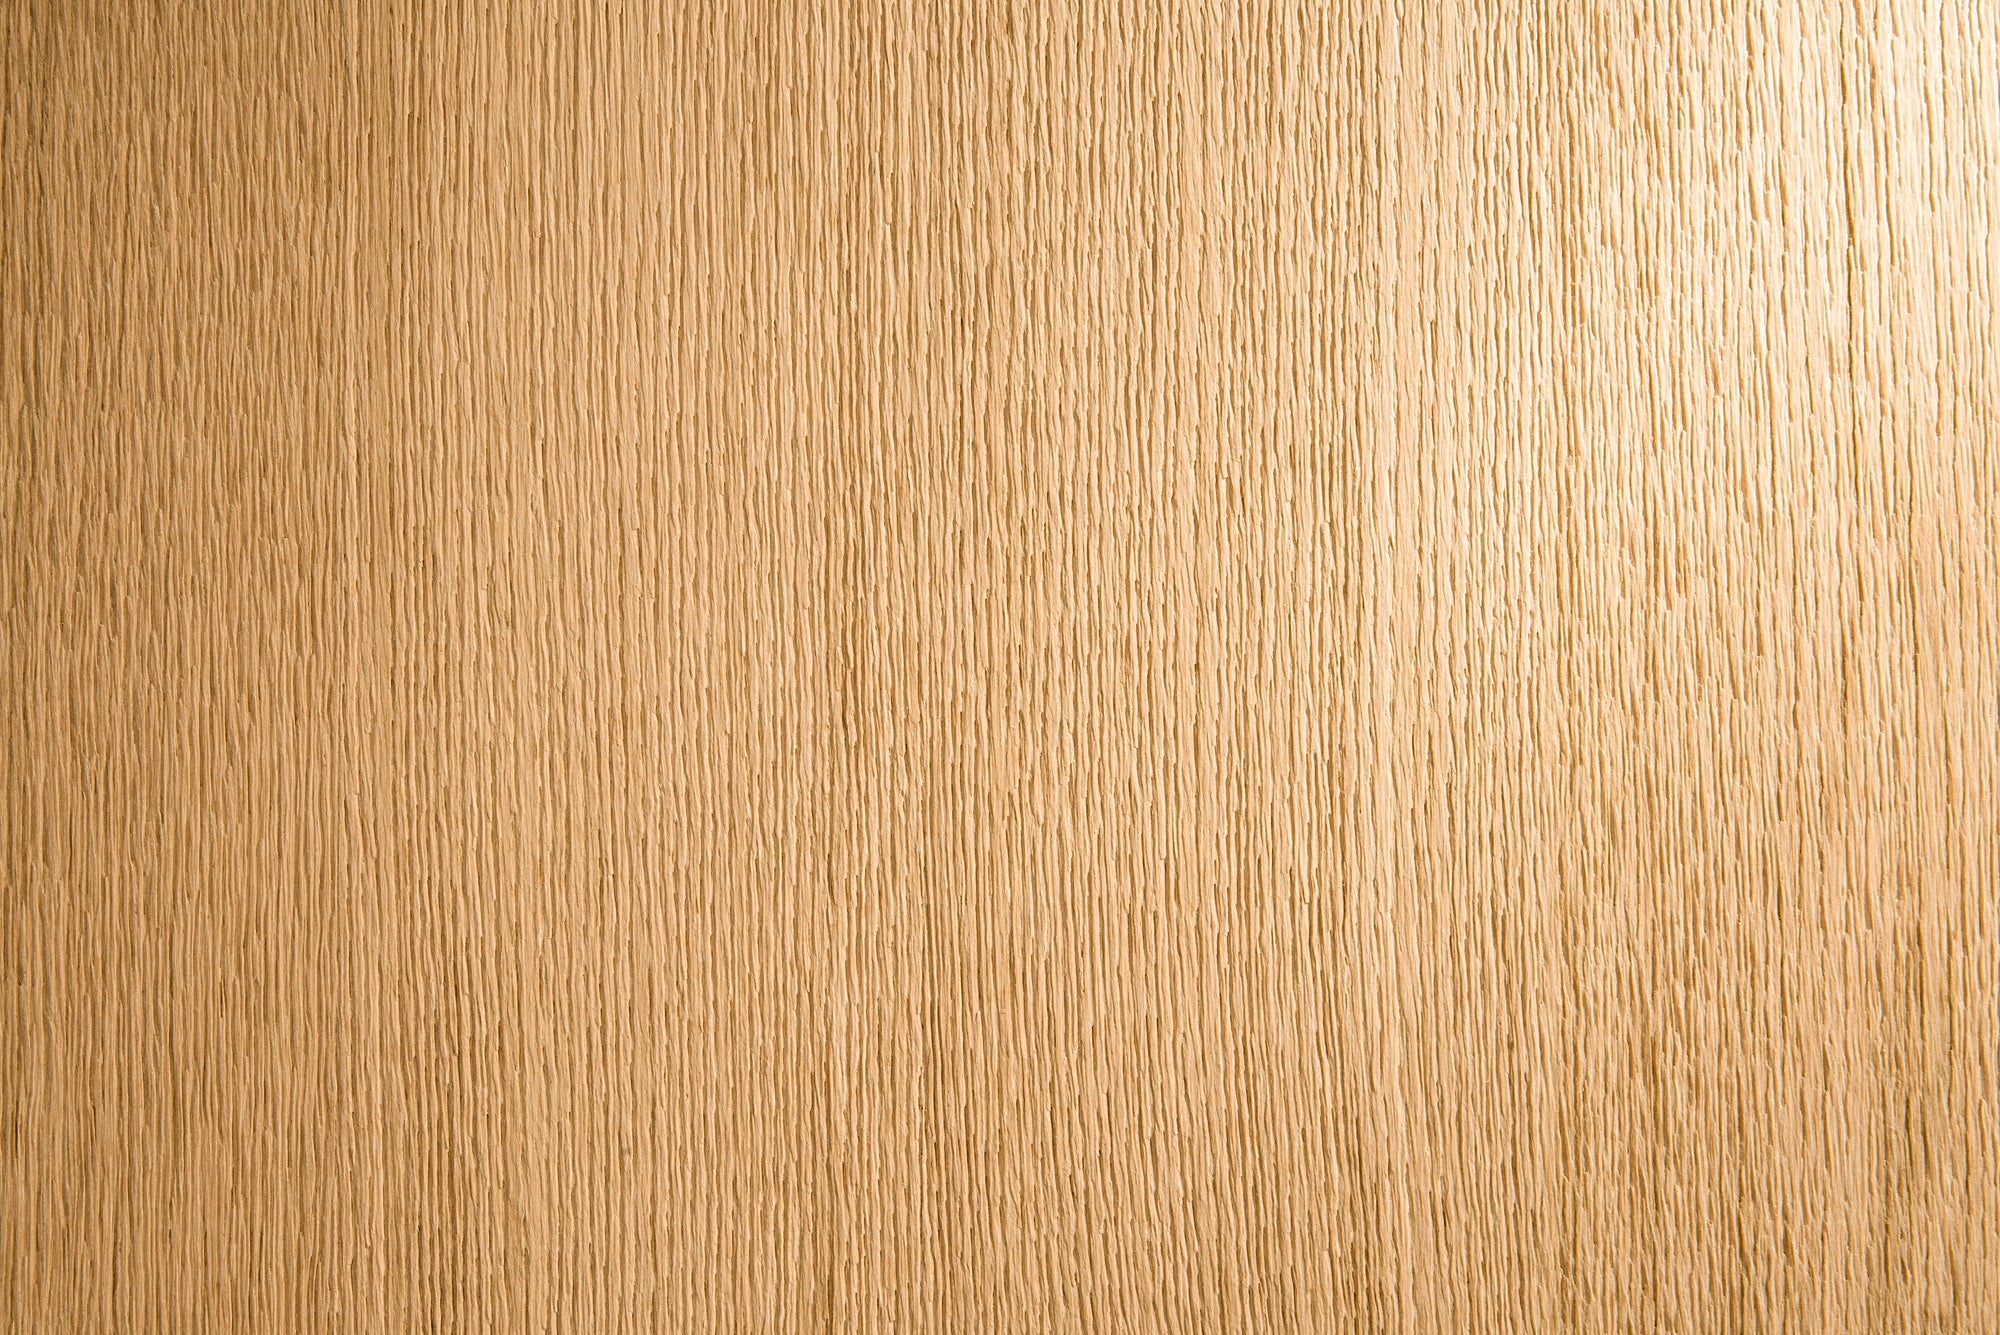 brushed wood - brushed veneer - brushed veneer panels 